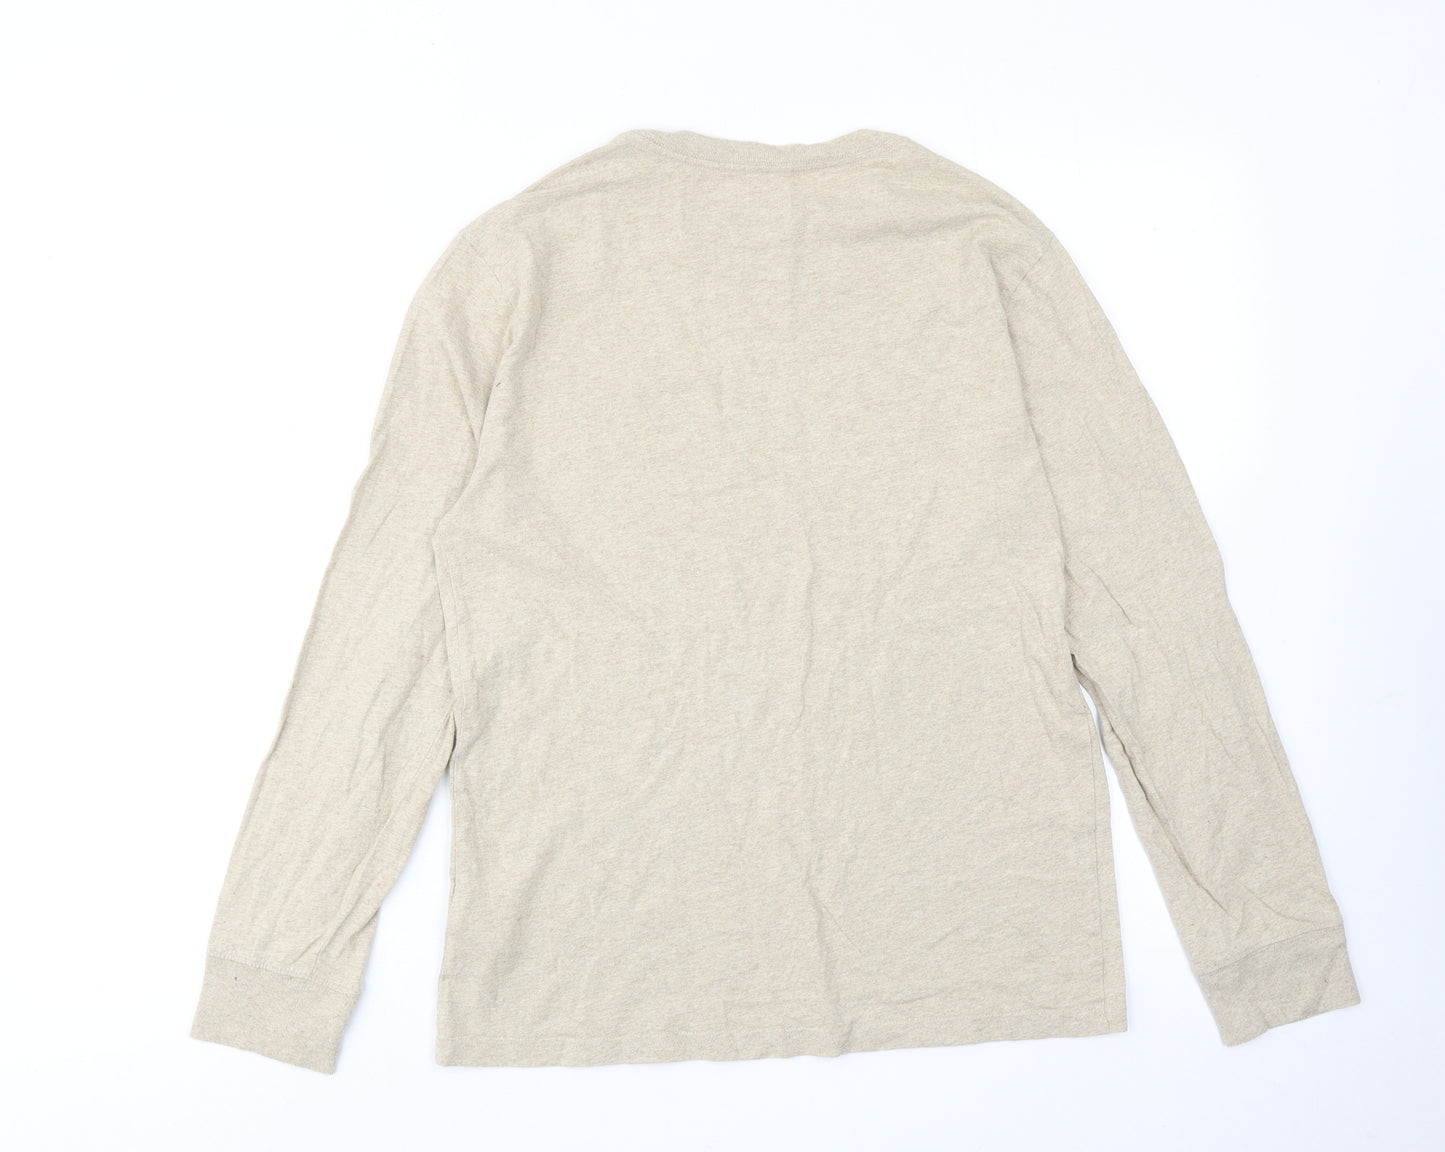 Ralph Lauren Womens Beige Cotton Basic T-Shirt Size 14 Round Neck